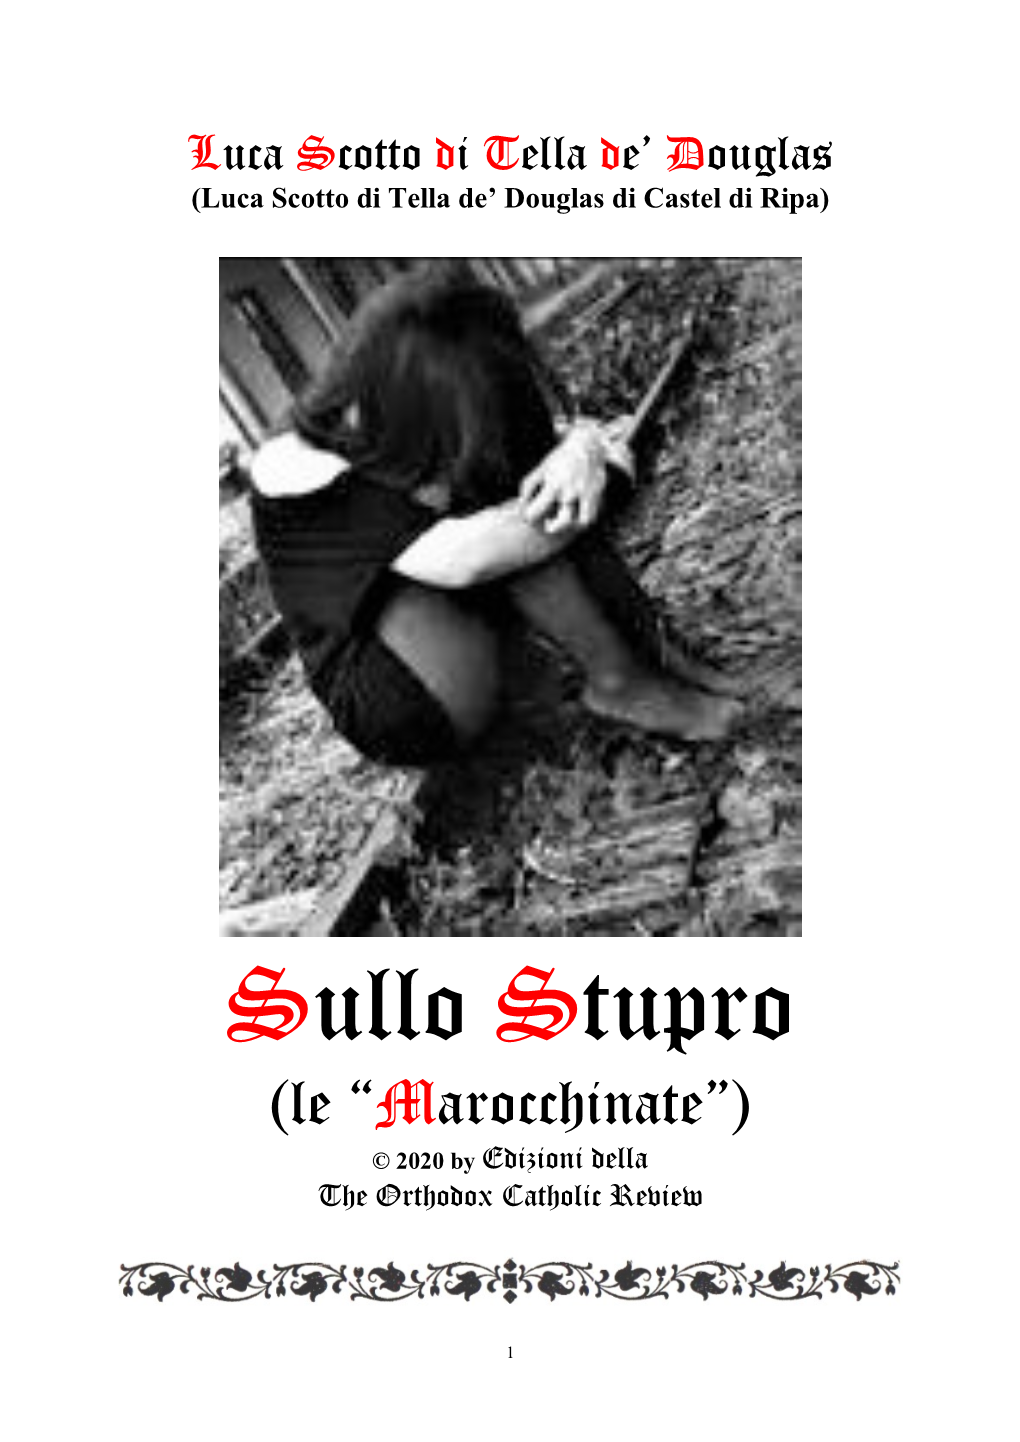 Sullo Stupro (Le “Marocchinate”) © 2020 by Edizioni Della the Orthodox Catholic Review